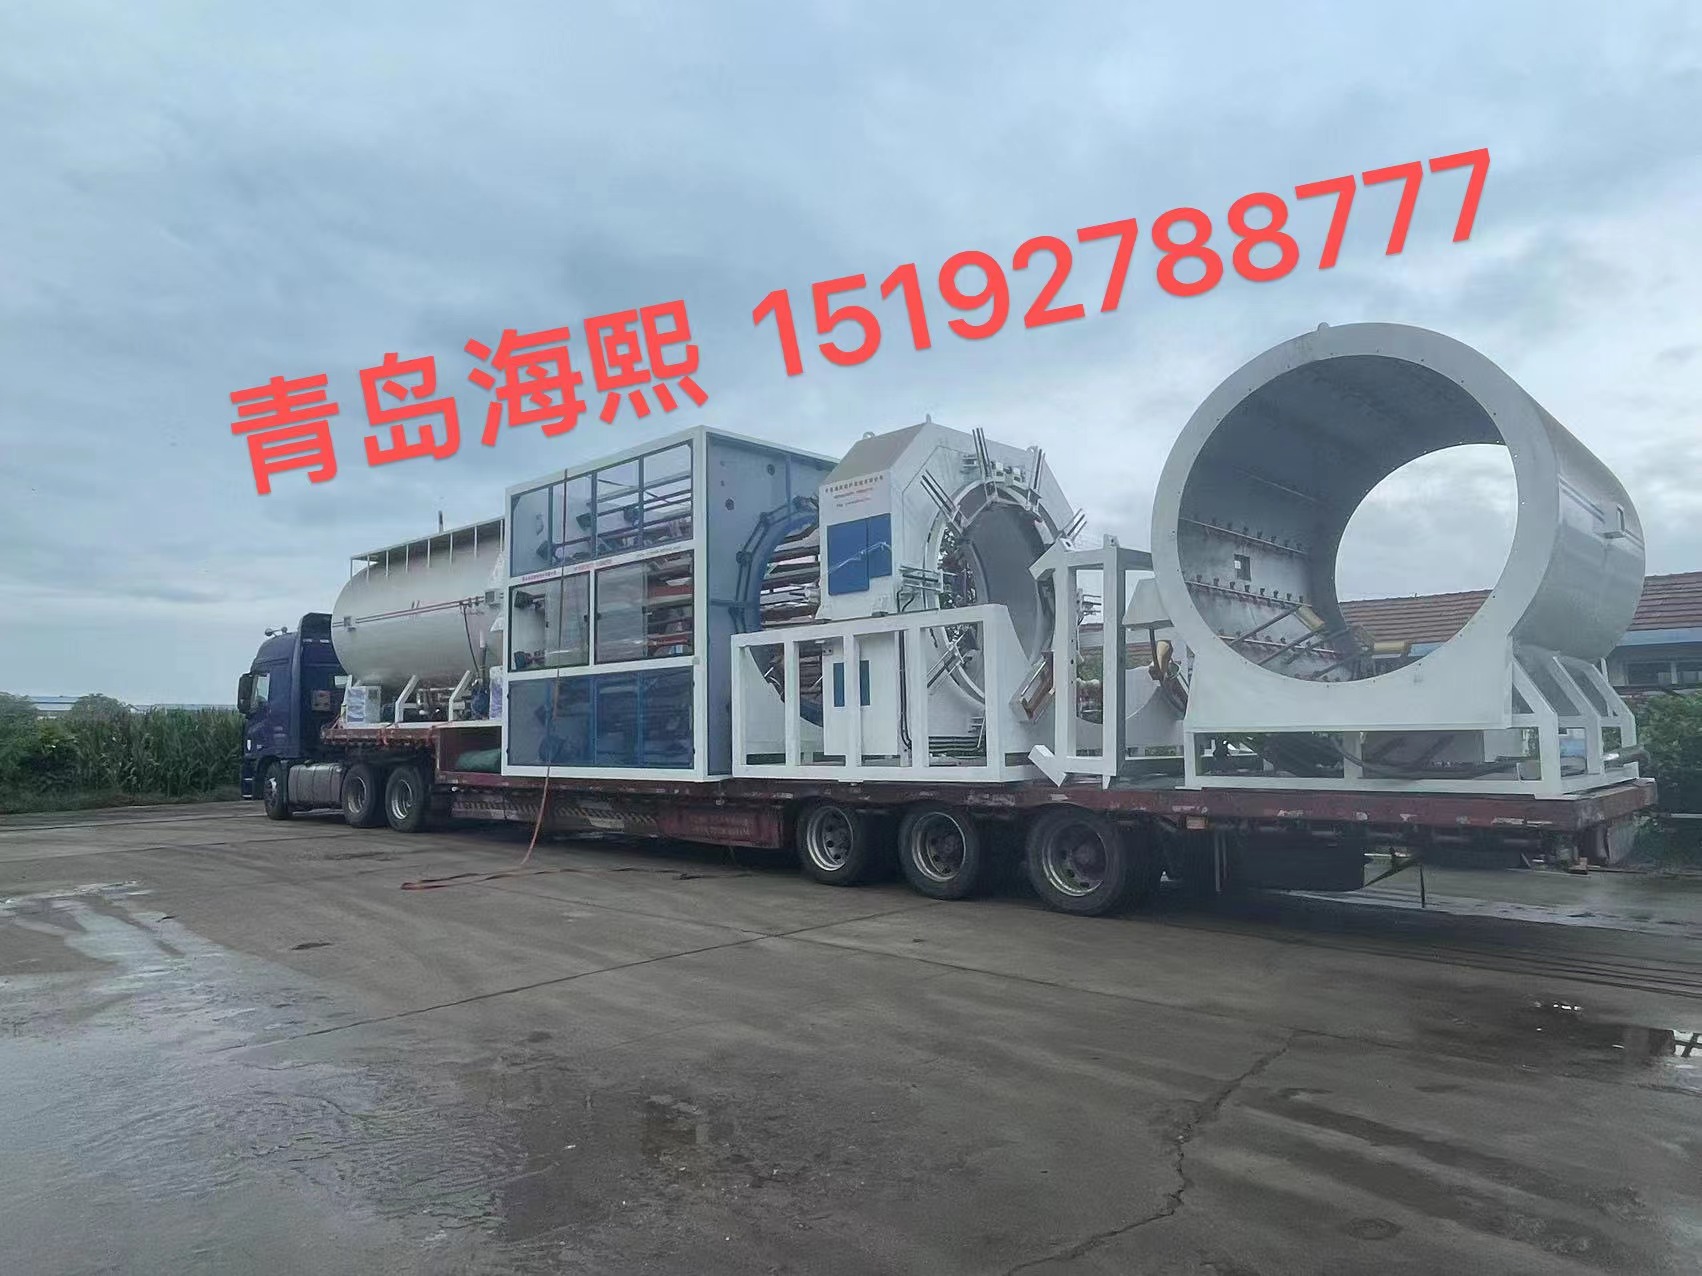 The first car of Gansu Zhongrui new insulation building Materials Co., LTD